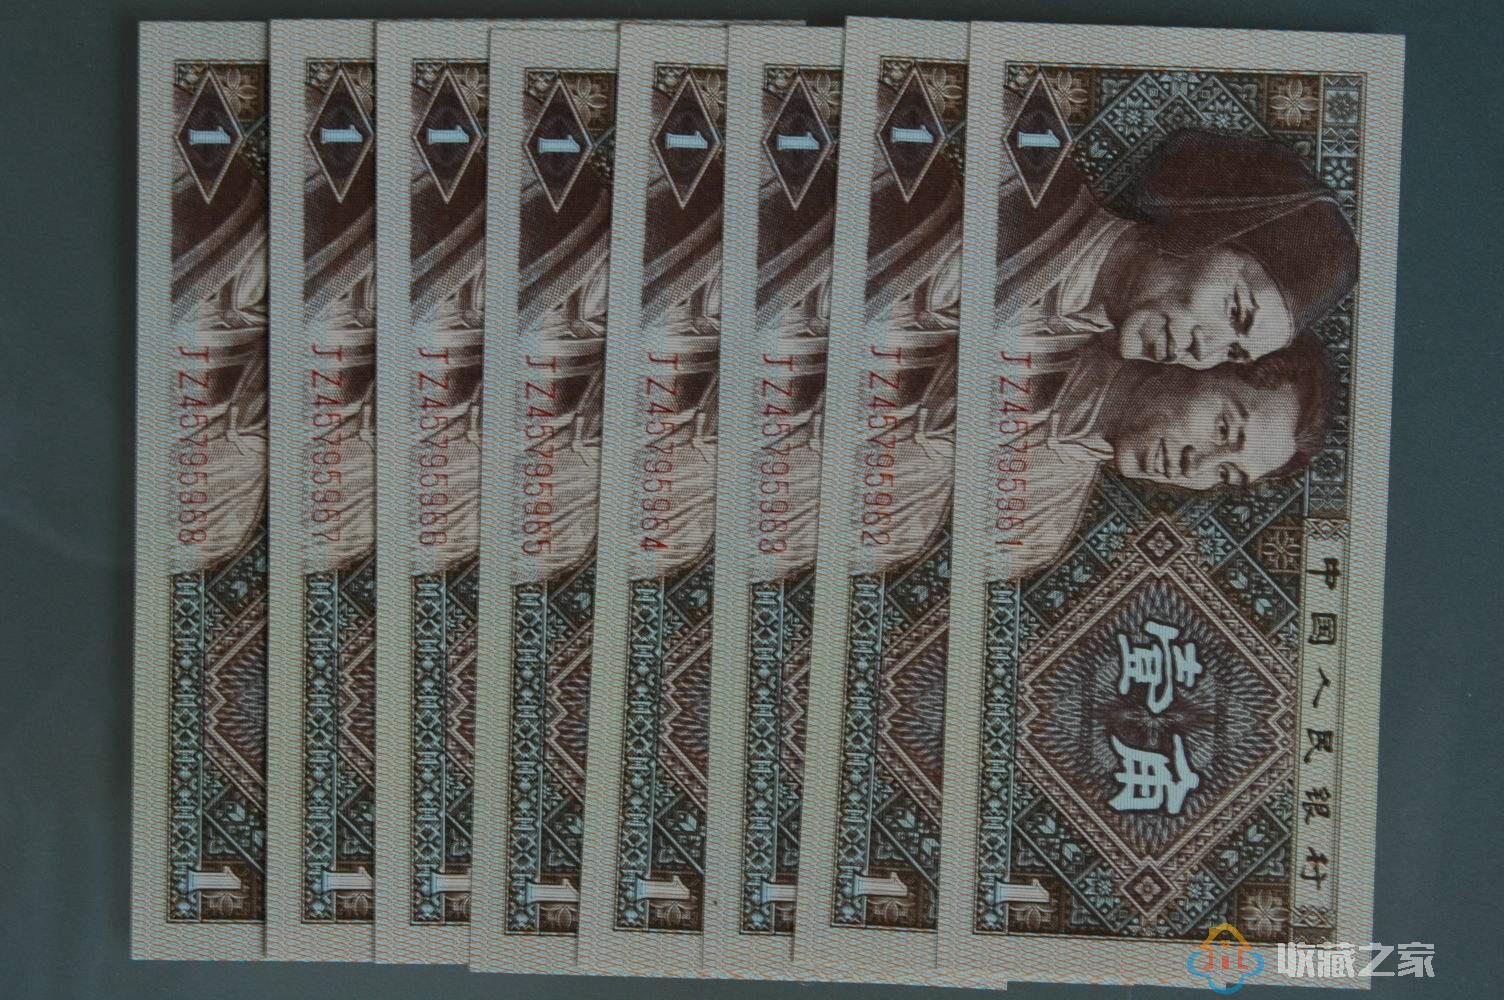 1980年1角纸币